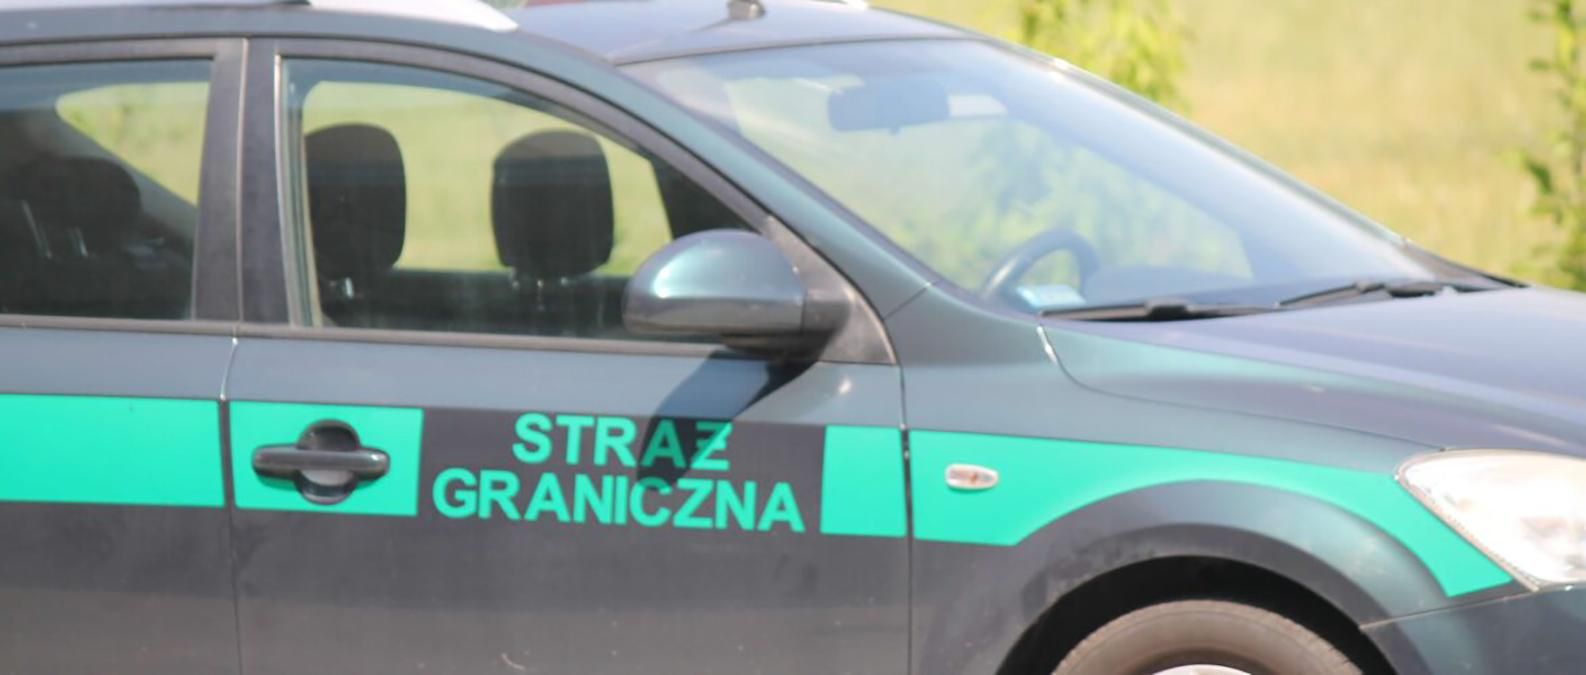 У Польщі затримали злочинну групу, яка викрадала автомобілі 